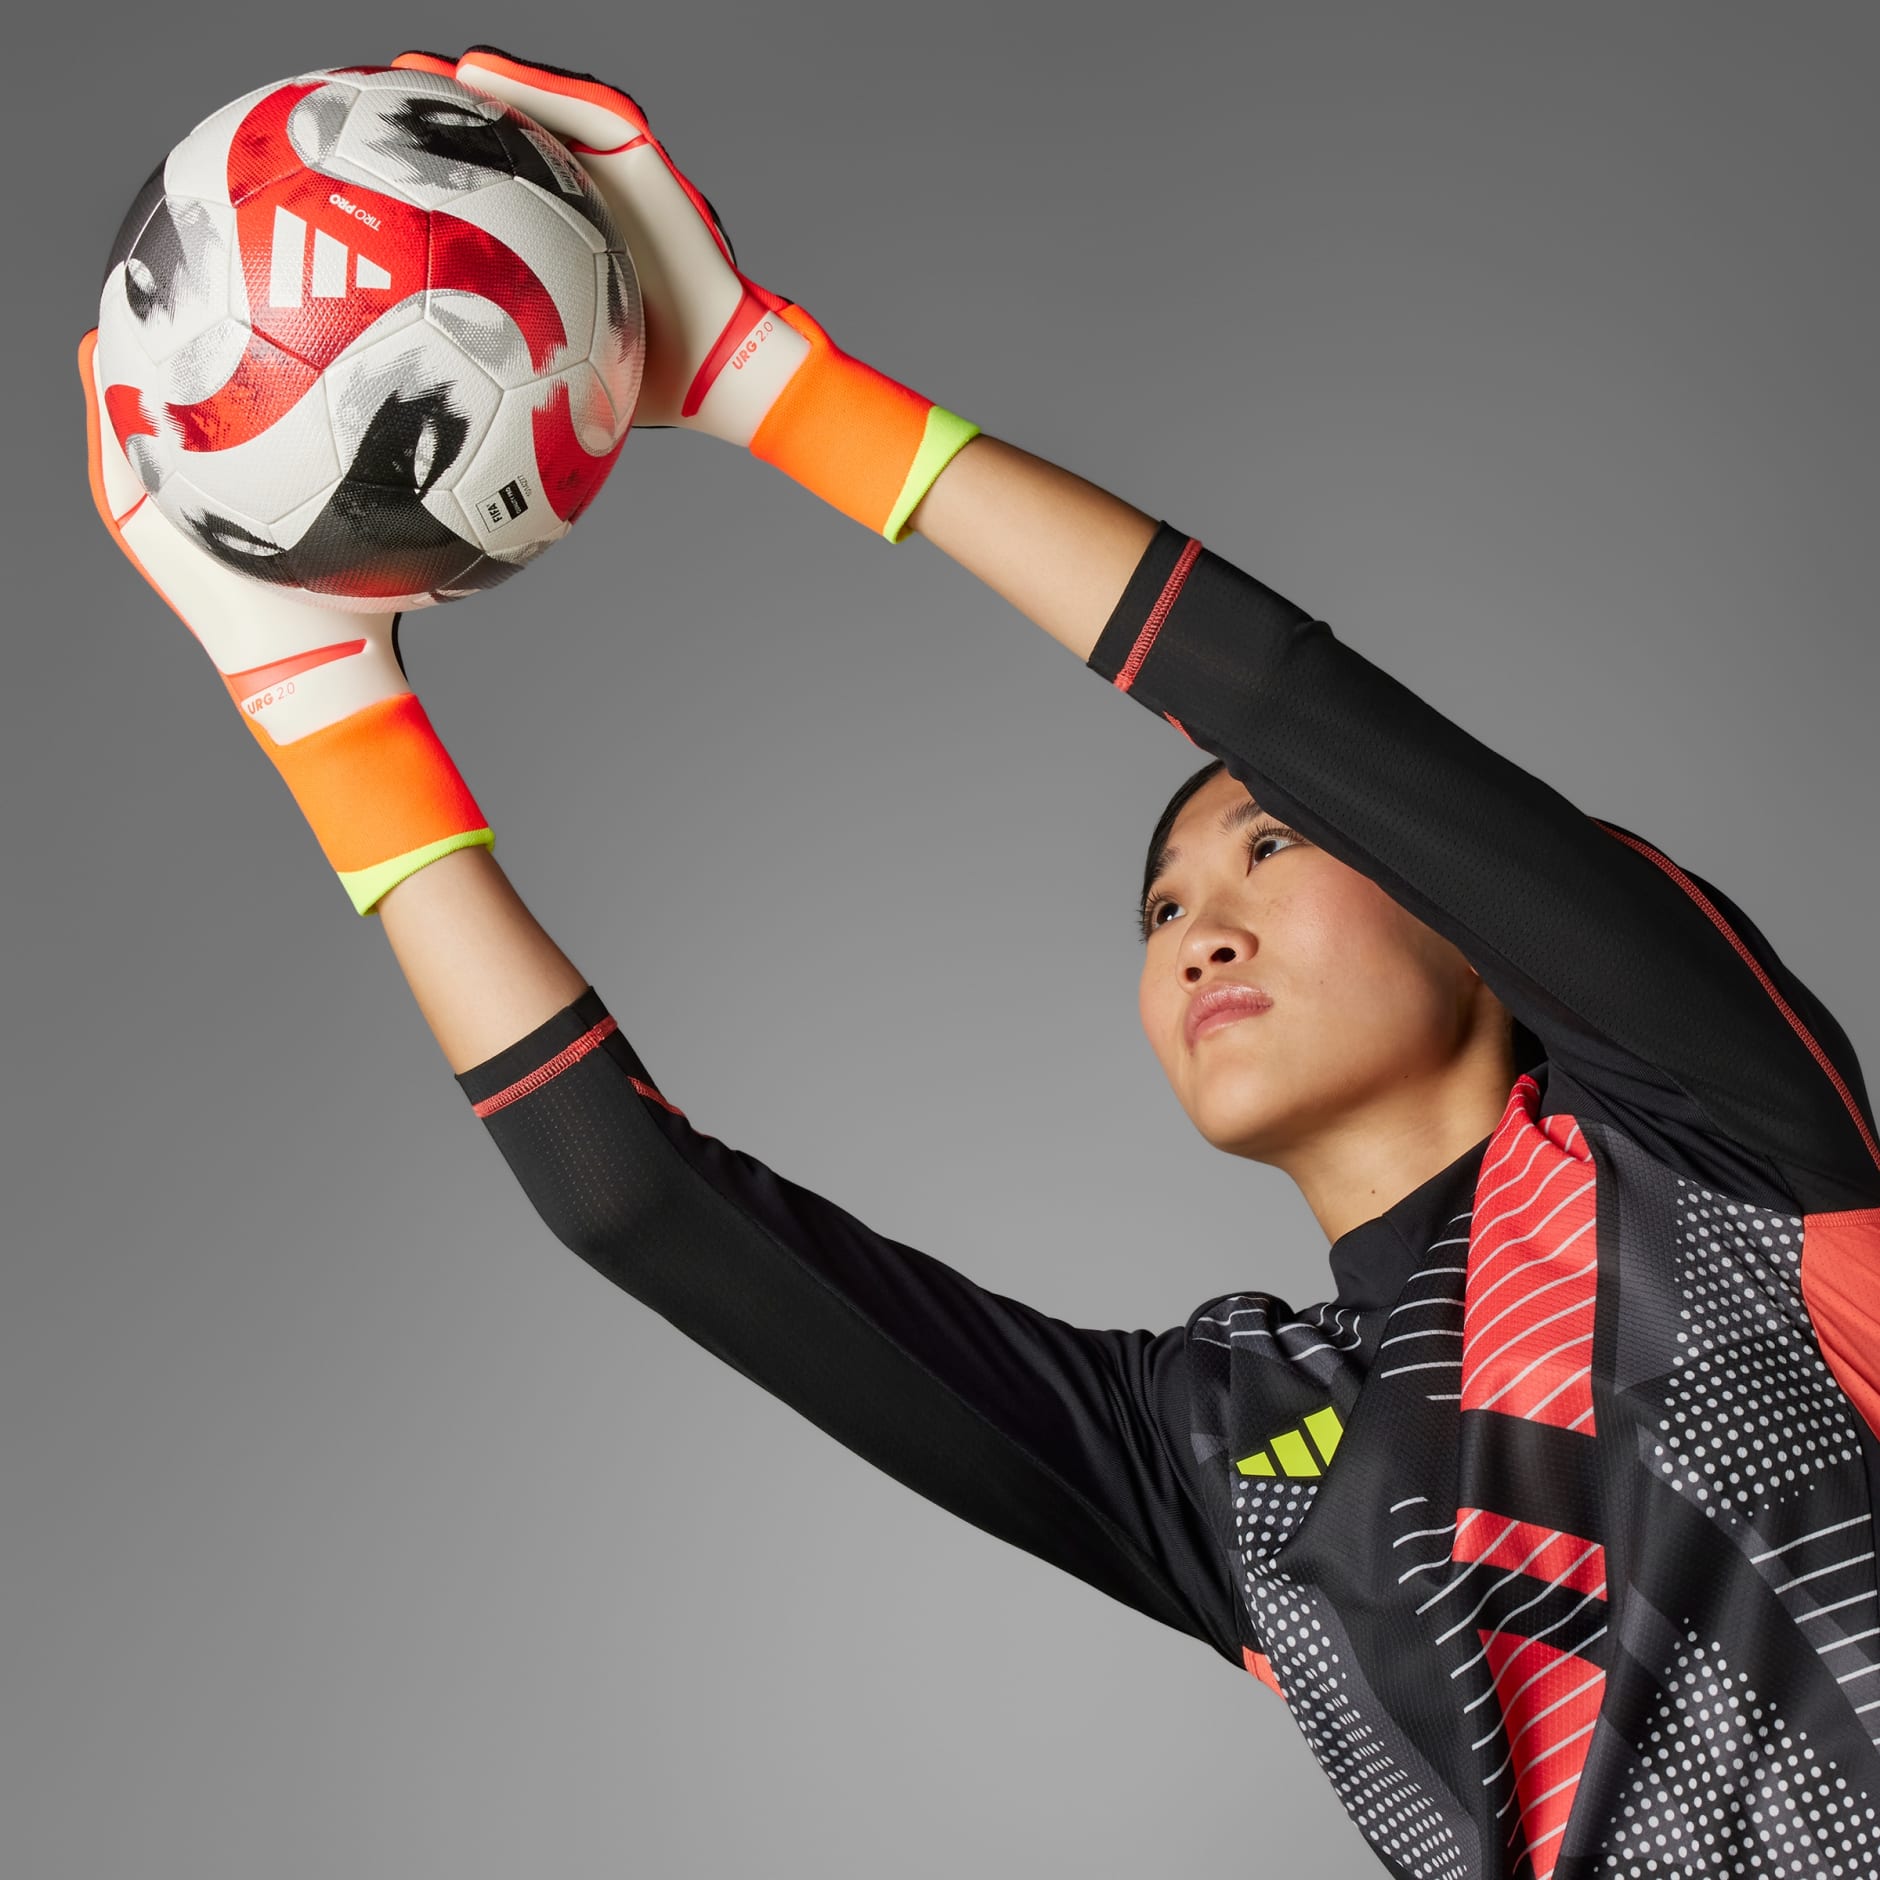 Forever Sport - 🔥 Gants Adidas Predator Pro Des gants de gardien de but  créés pour enchaîner les arrêts. Prends le contrôle avec ces gants de  gardien conçus pour les matchs. La